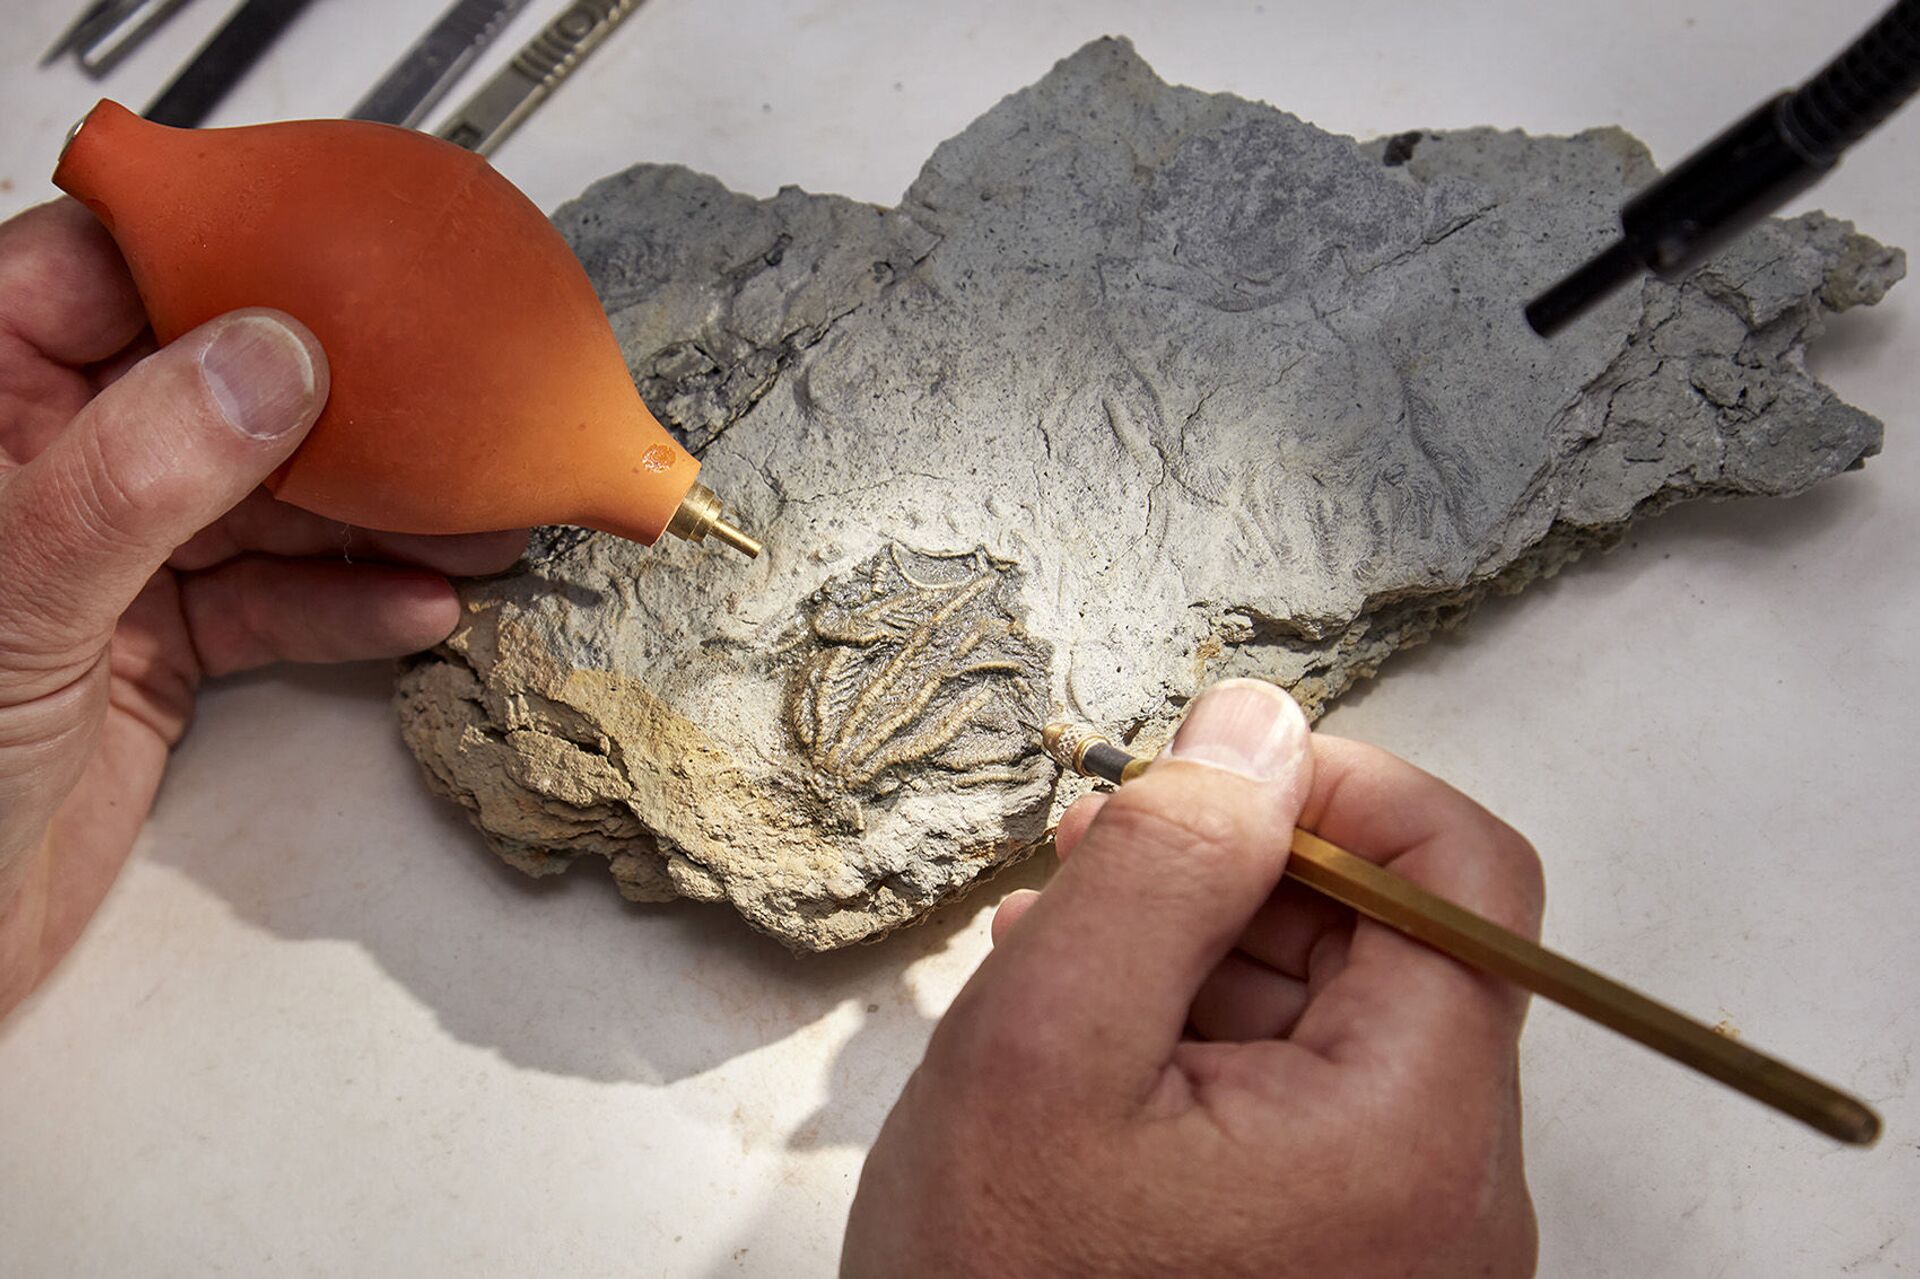 'Pompeia Jurássica': pedreira britânica revela fósseis extraordinários de animais marinhos (FOTOS) - Sputnik Brasil, 1920, 22.07.2021